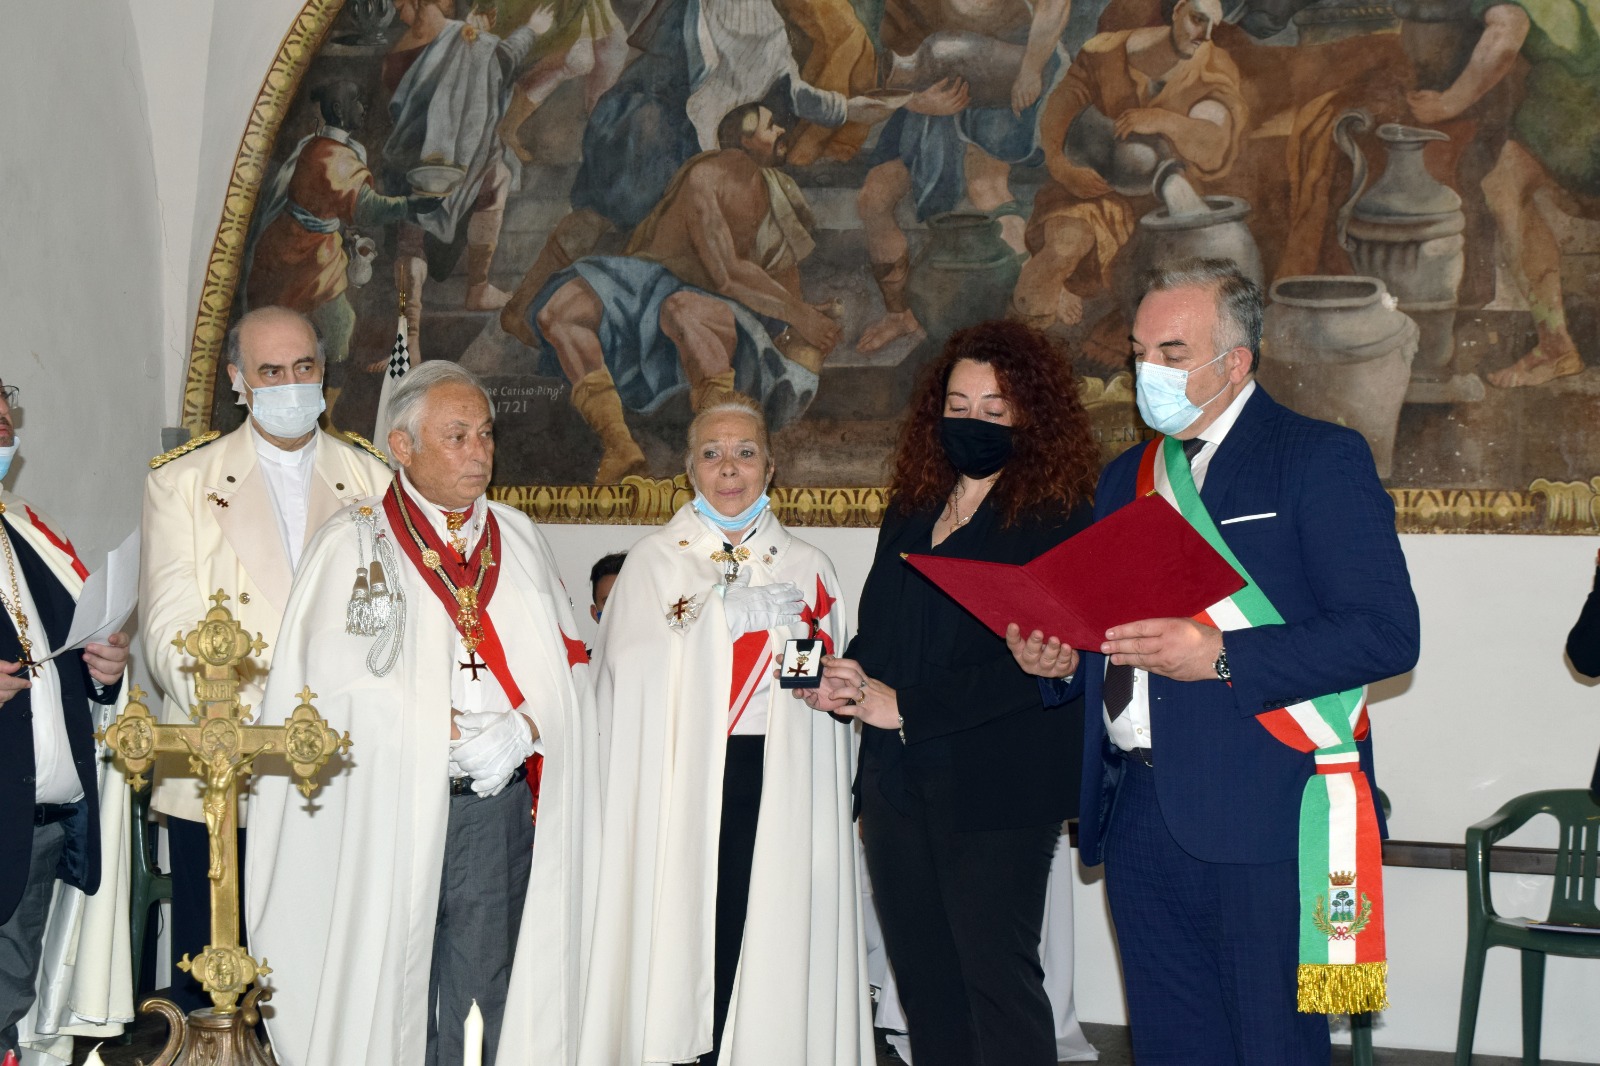 Somma Vesuviana (NA) – Il Vice Brigadiere dei Carabinieri Mario Cerciello Rega elevato a Cavaliere Templare